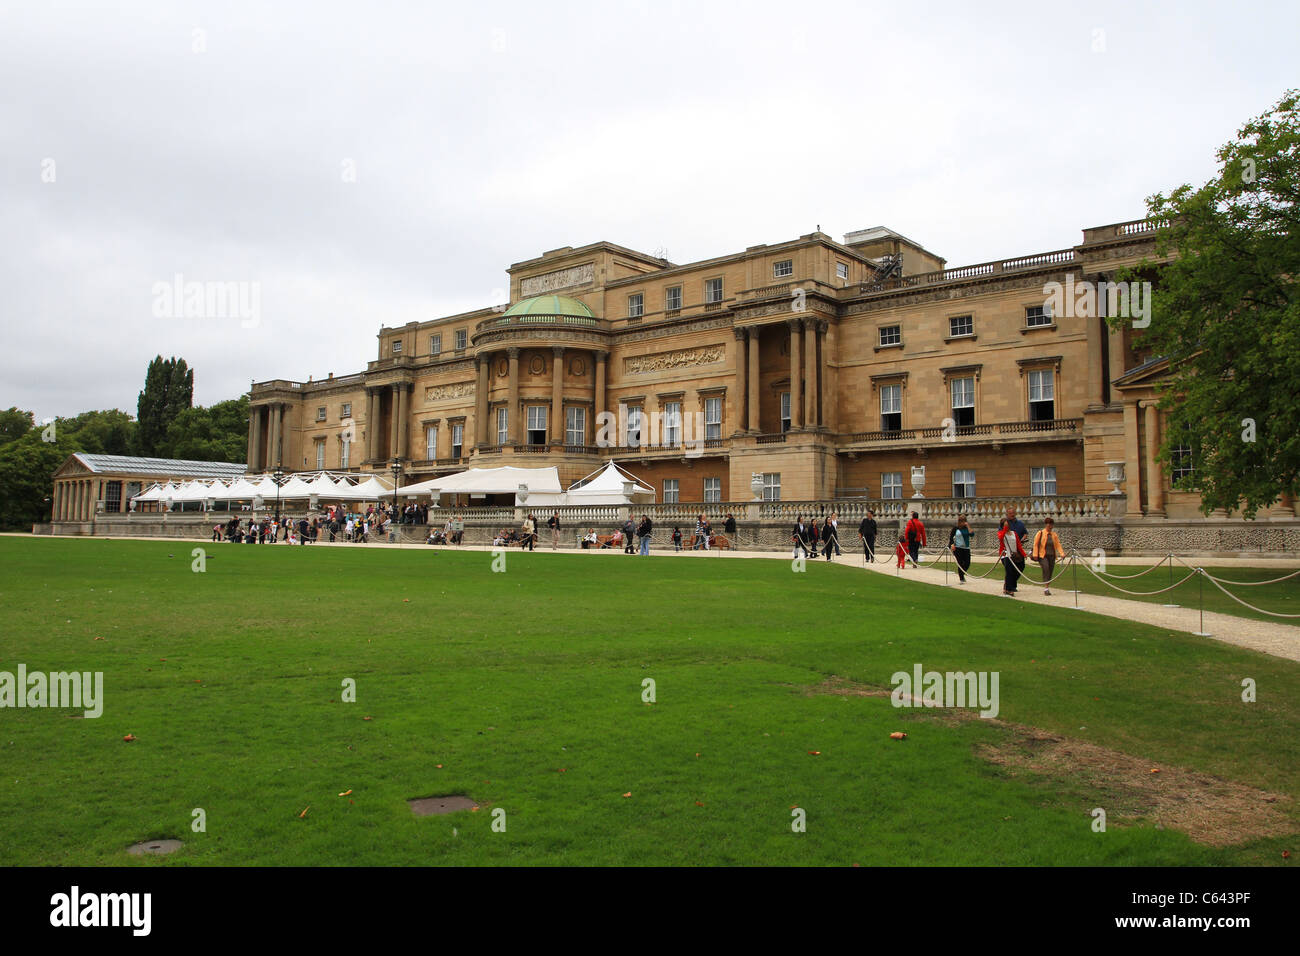 Une vue de l'arrière du palais de Buckingham, Londres Banque D'Images